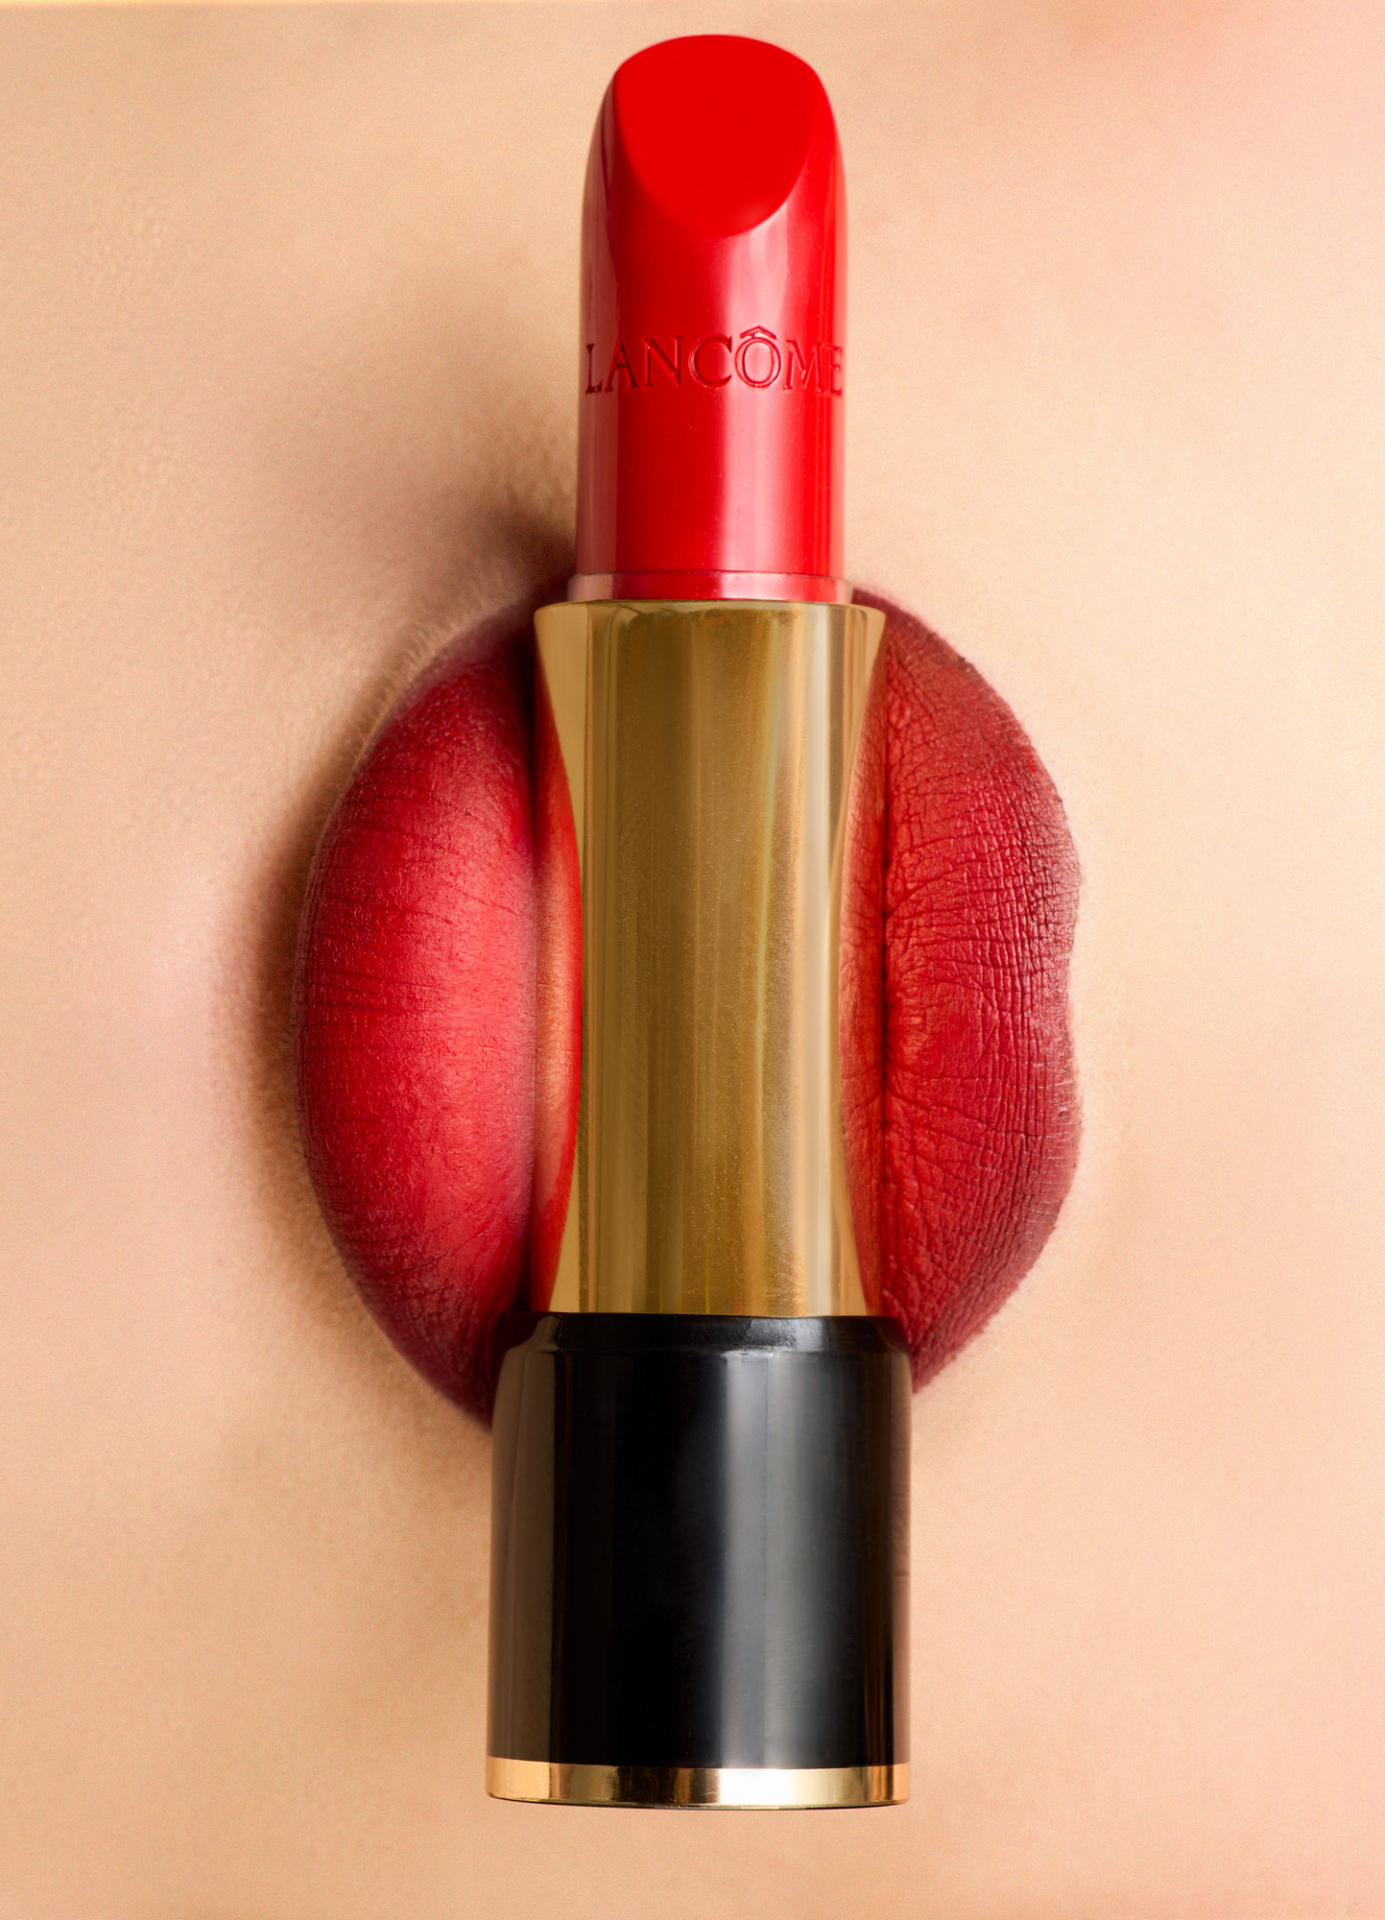 ce rouge à lèvres Lancôme incarne la quintessence du glamour. Sa teinte éclatante se marie parfaitement avec la beauté naturelle des lèvres